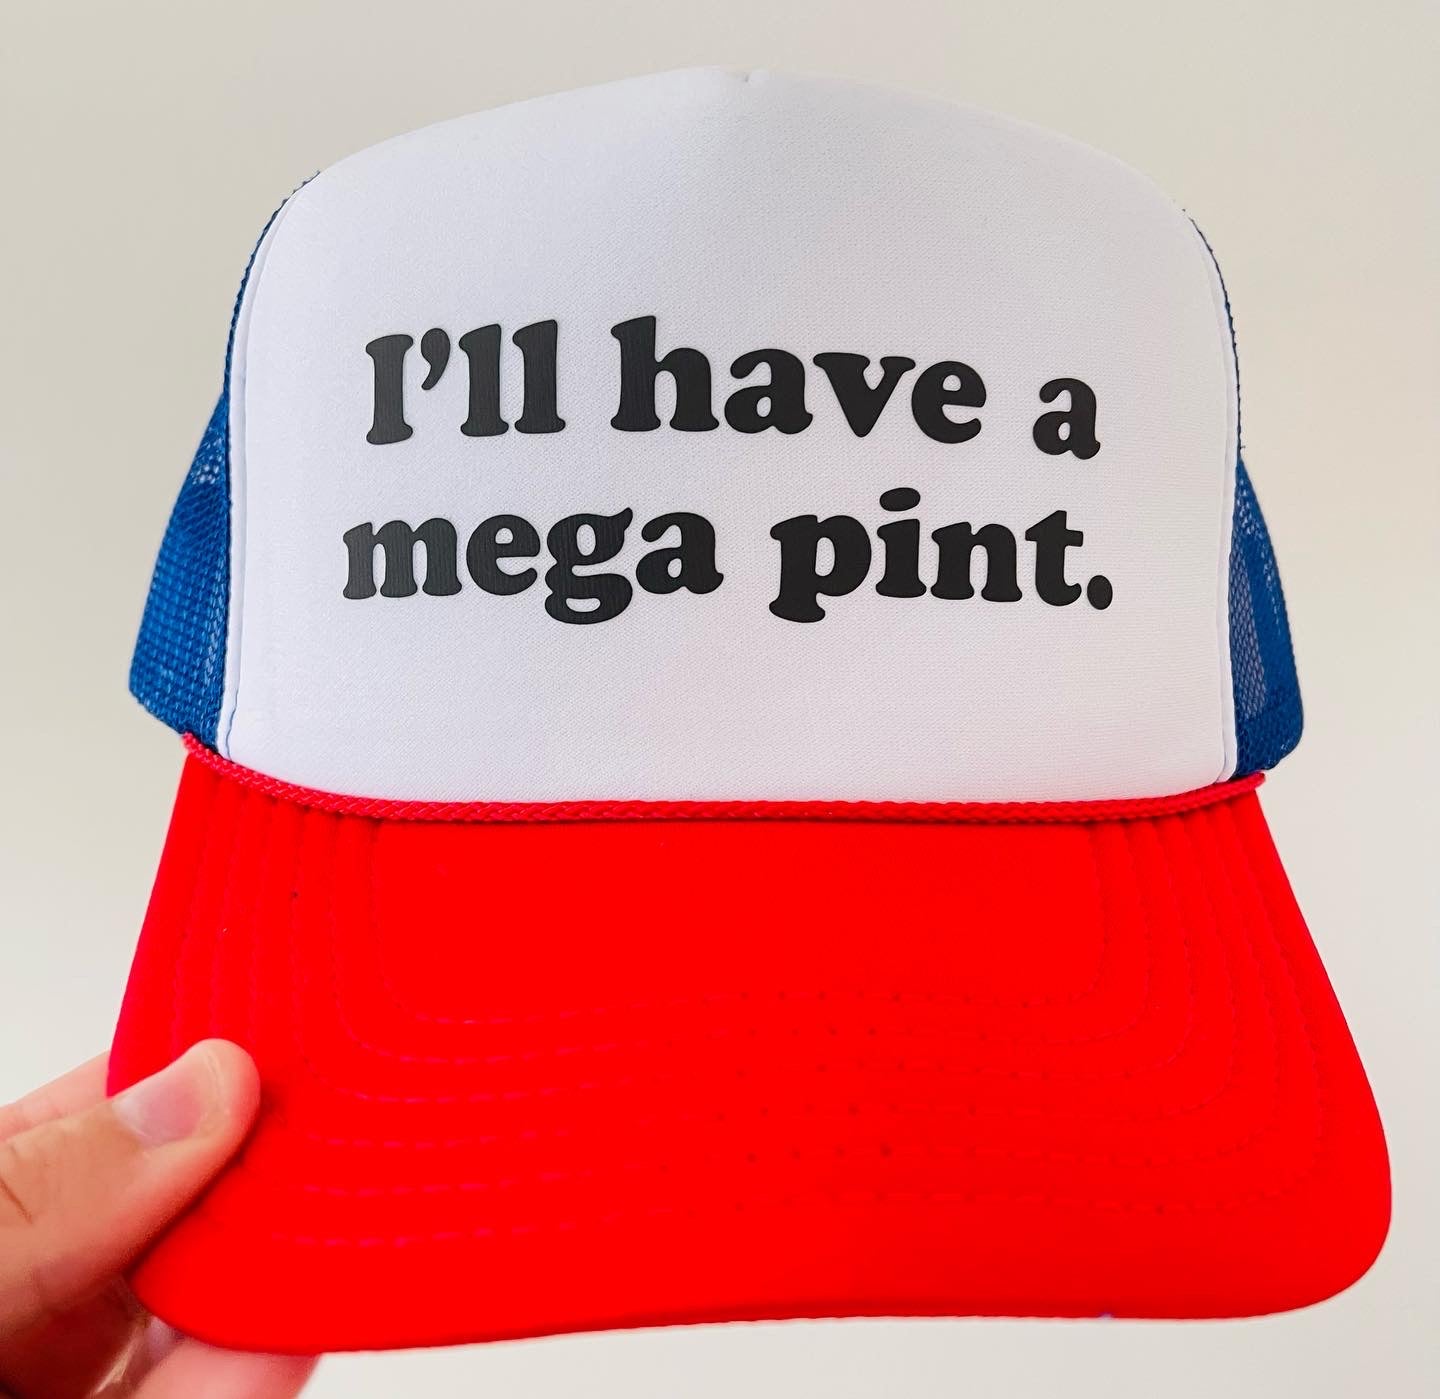 I’ll have a mega pint. (Johnny Depp)